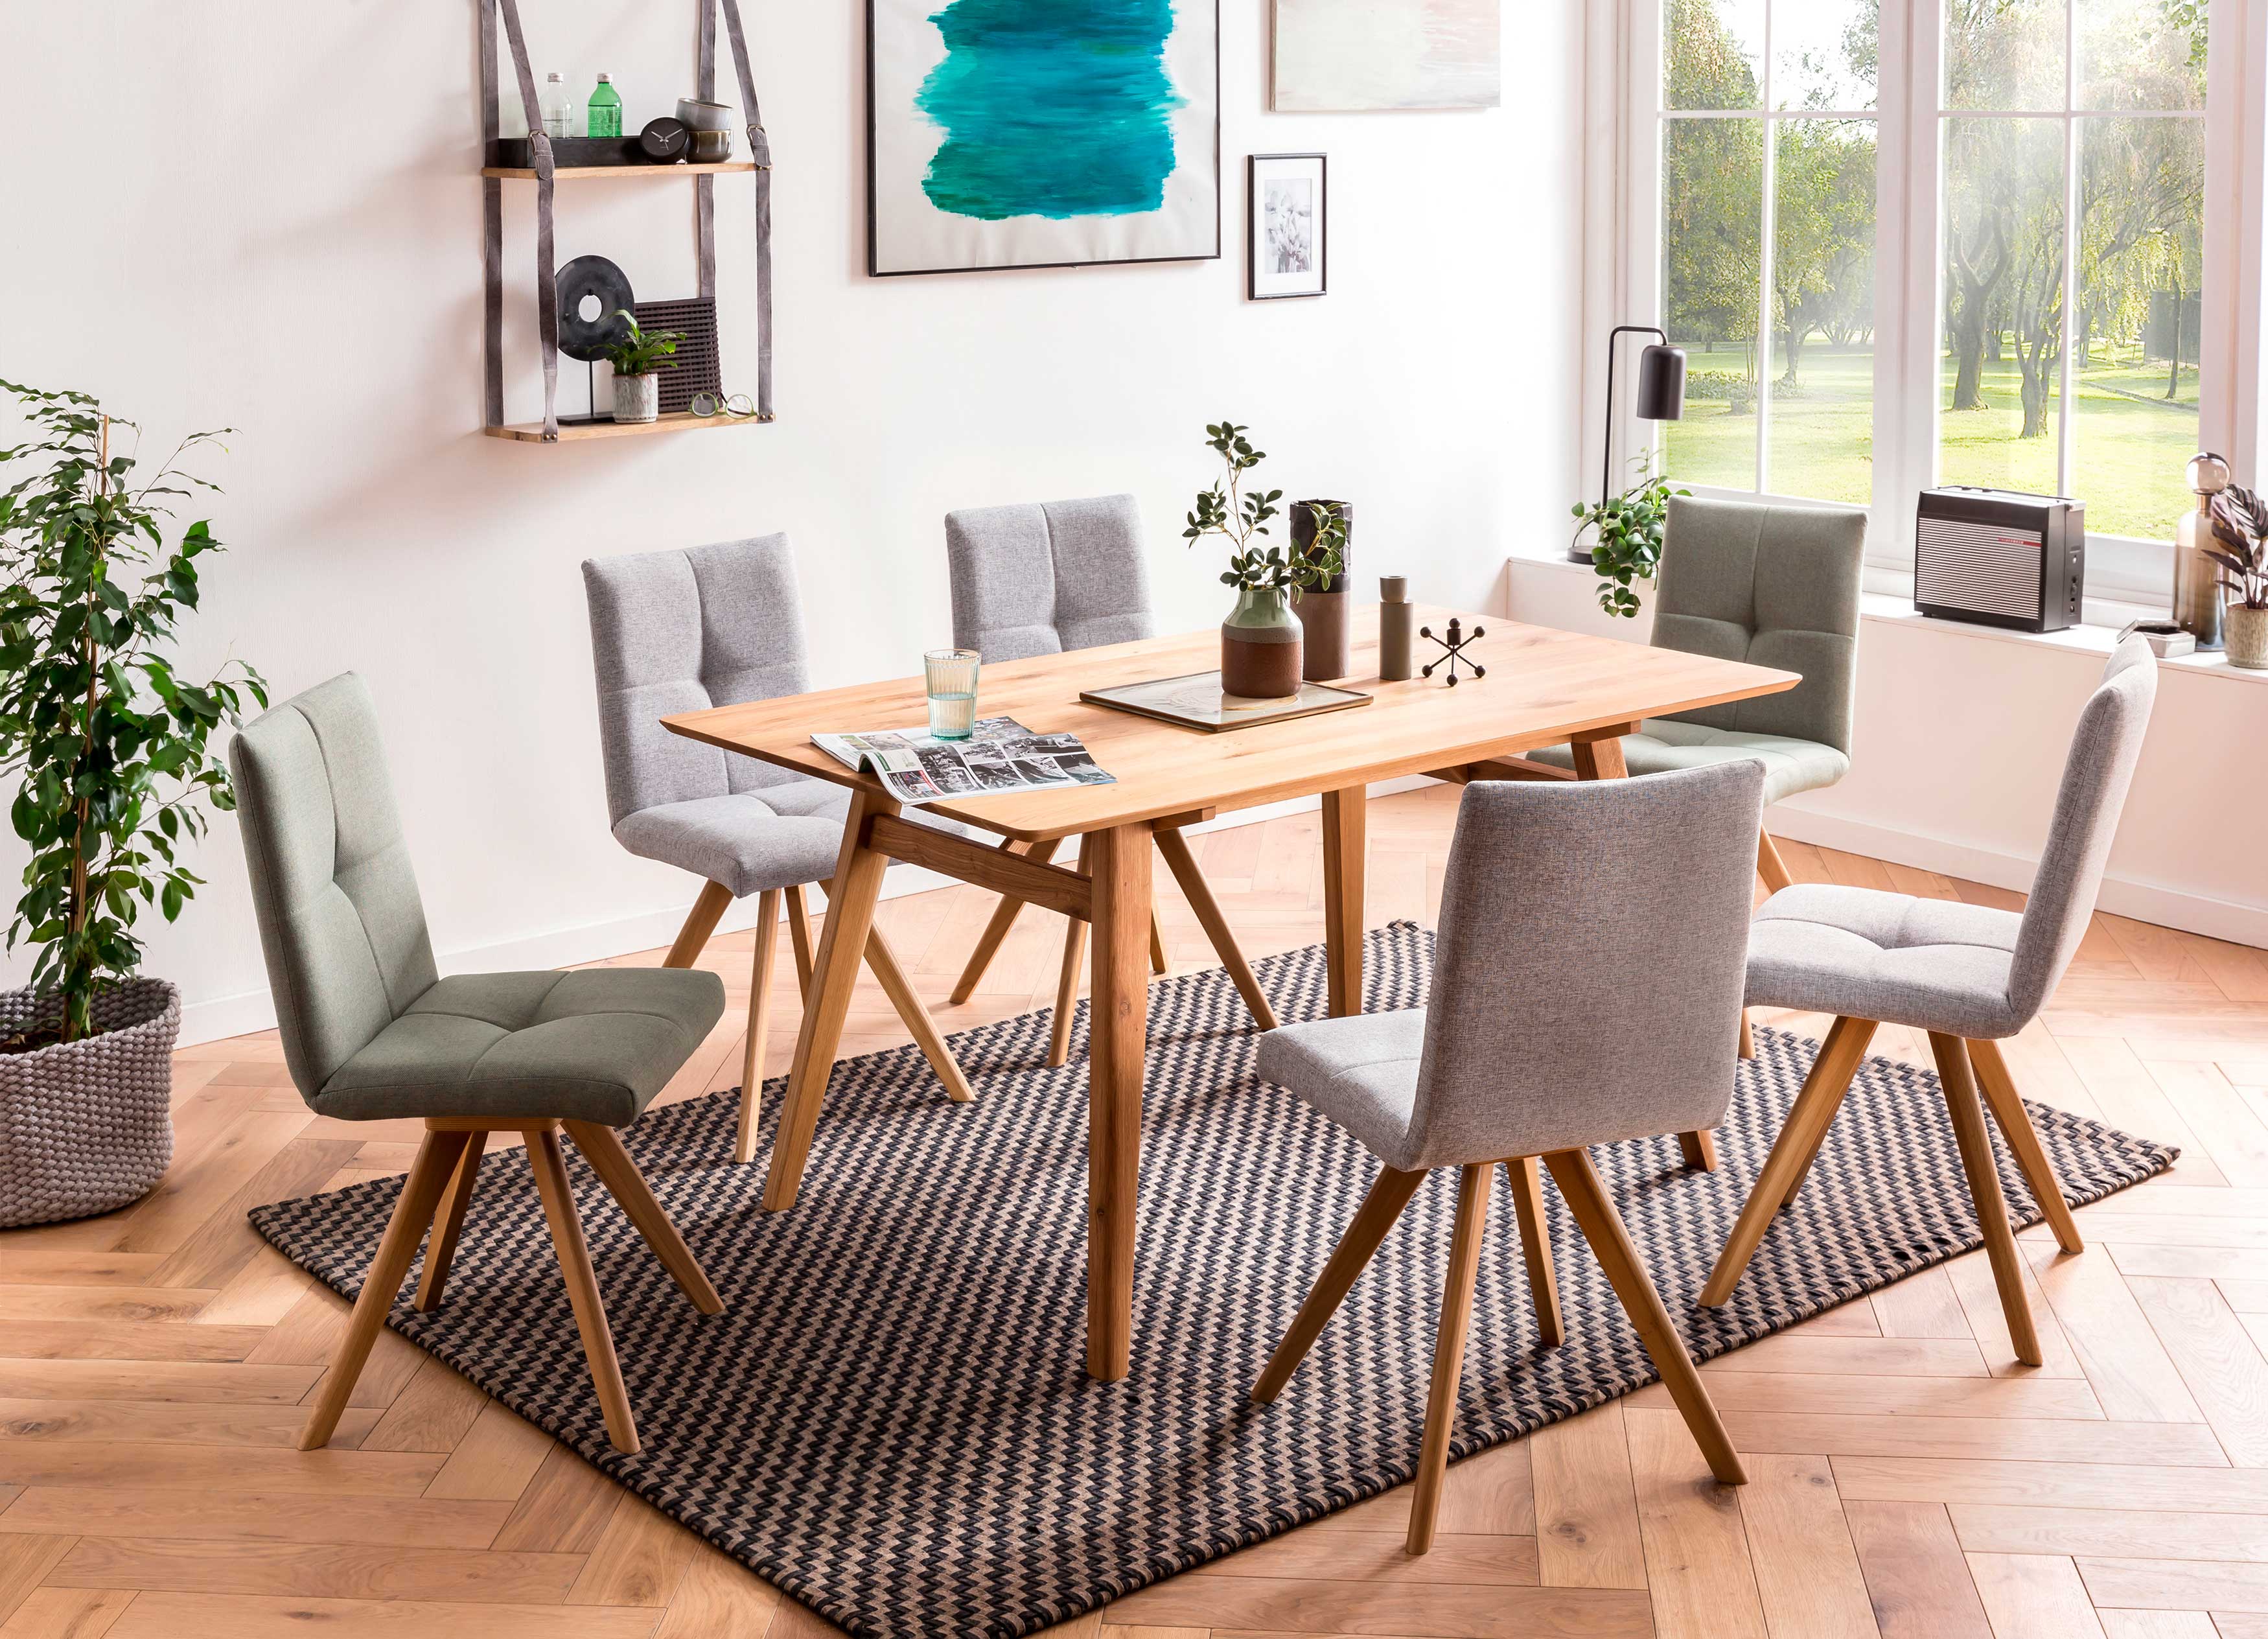 Standard Furniture Tischgruppe mit Lagos Massivholztisch und Stühlen Odense mint und grau